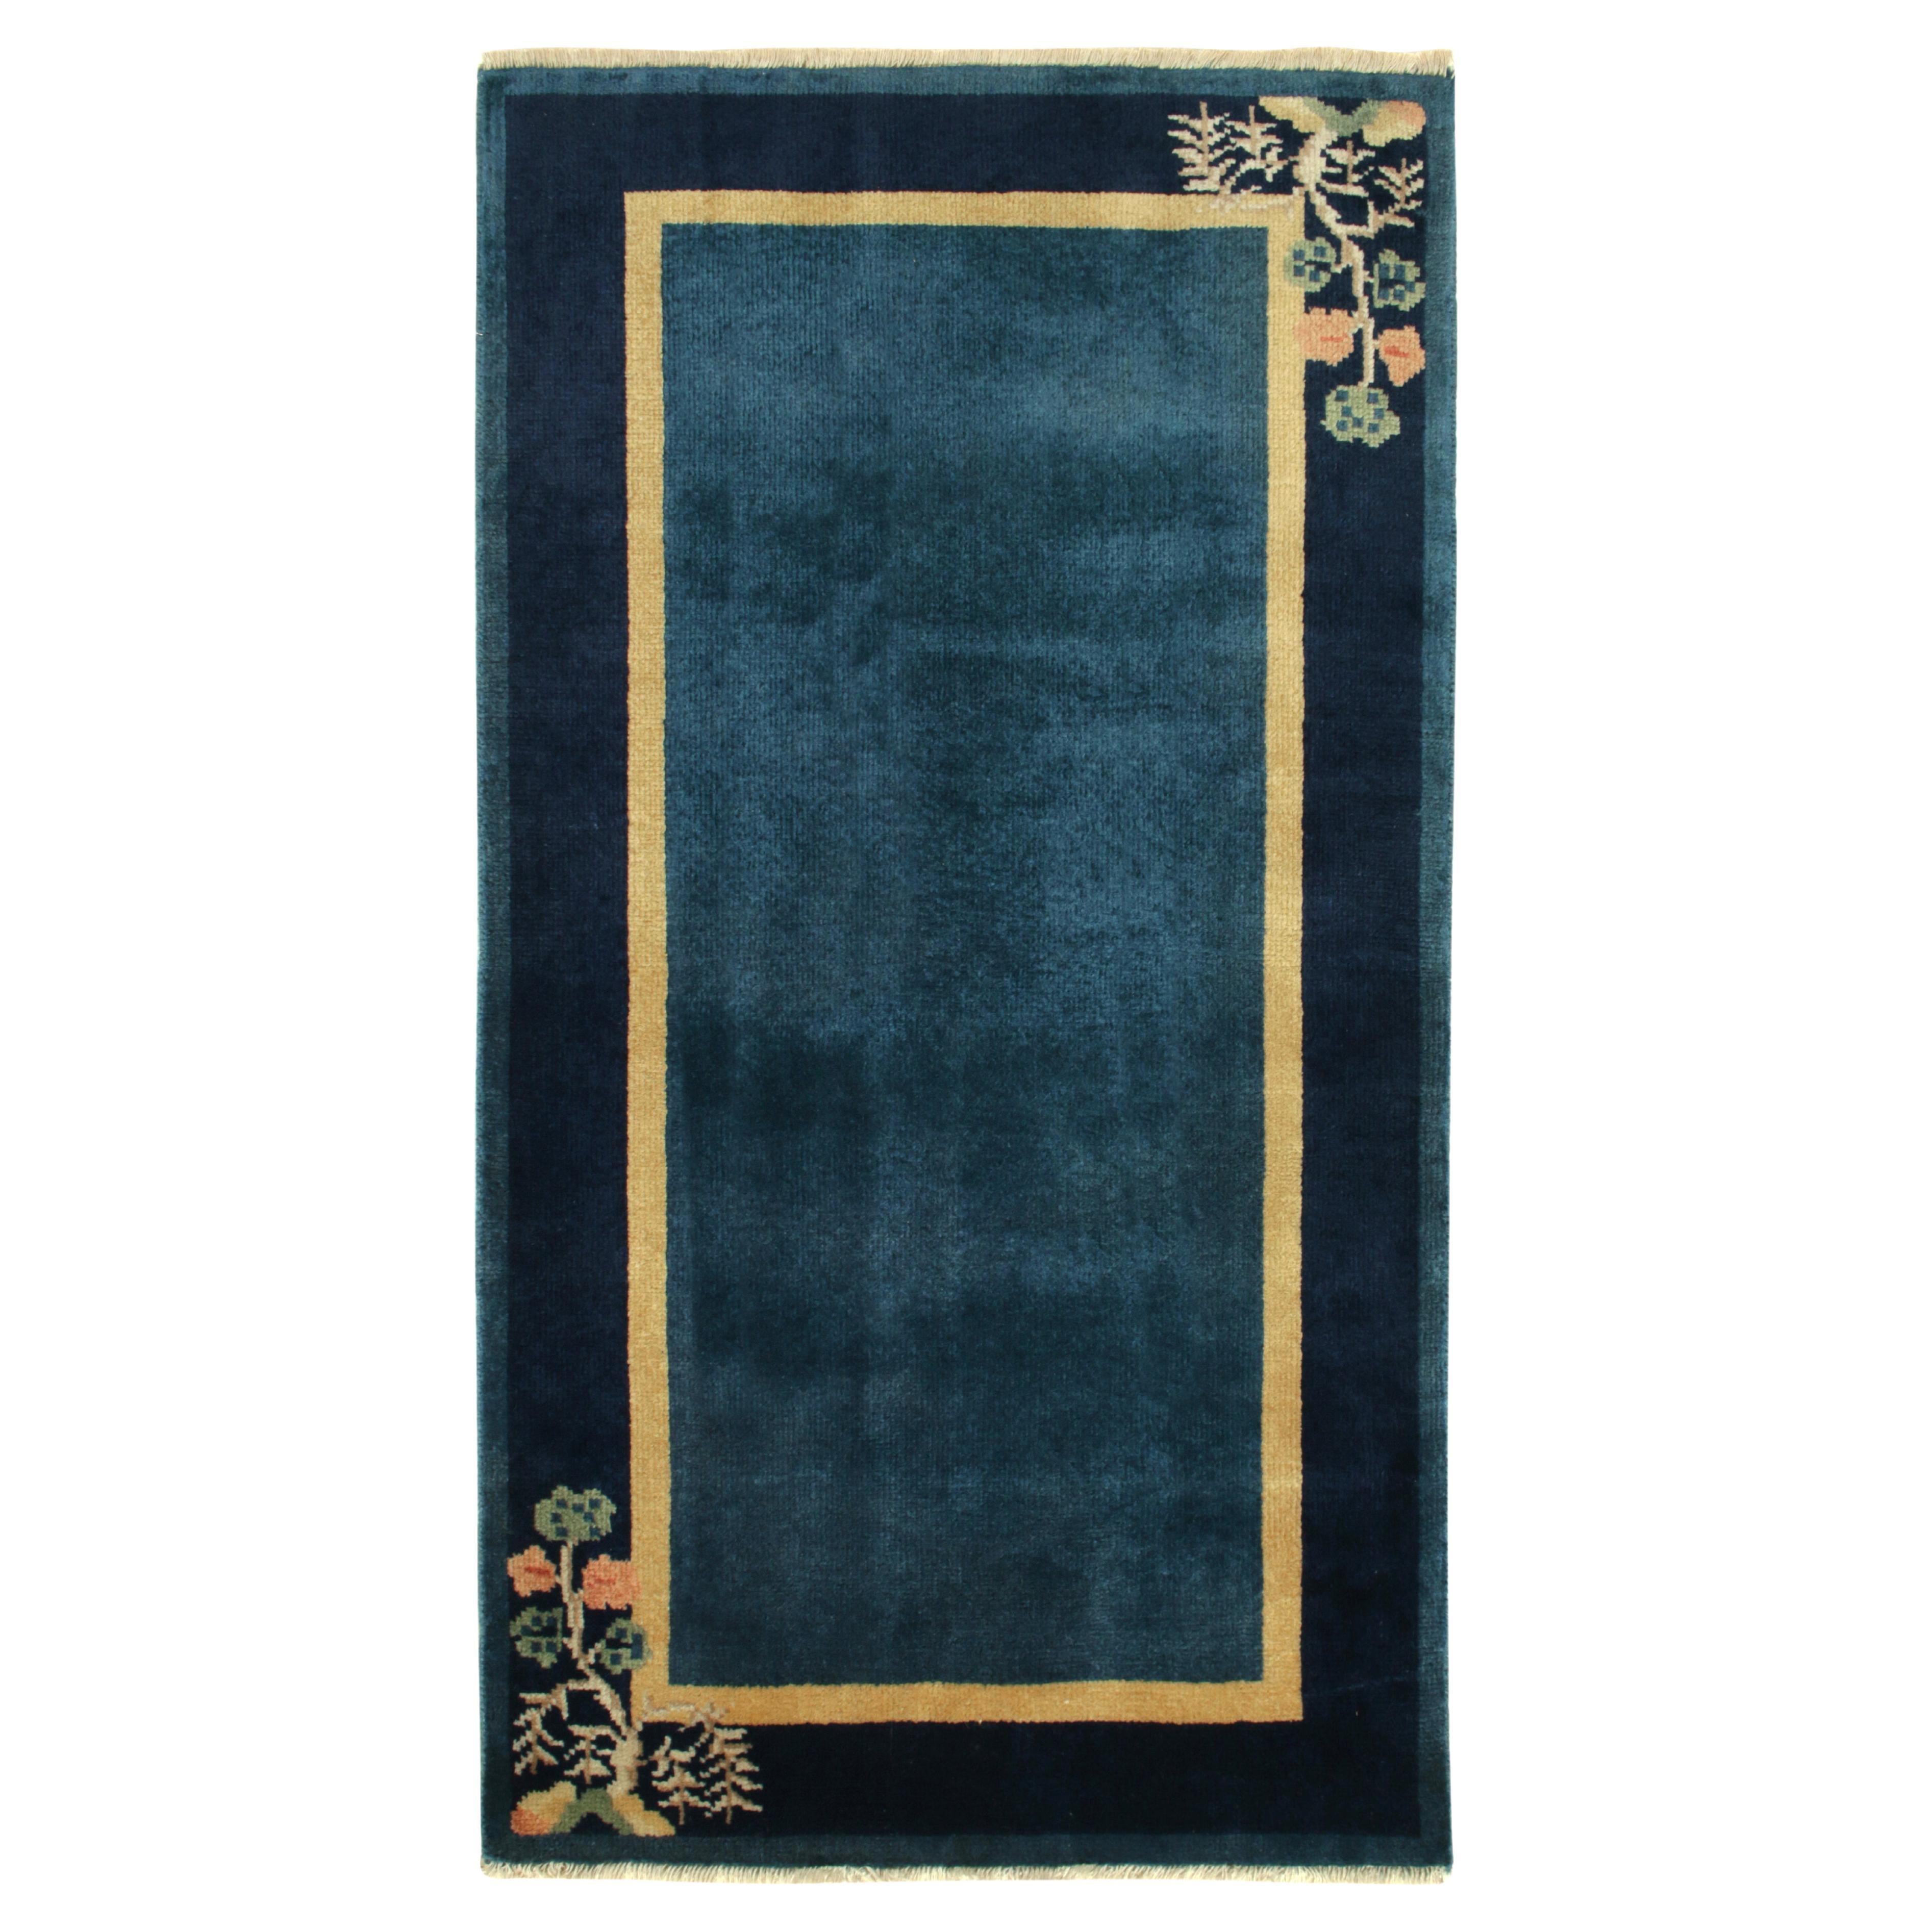 Chinesischer Deko-Teppich im Vintage-Stil in Blau, Gold mit Blumenmuster von Teppich & Kelim